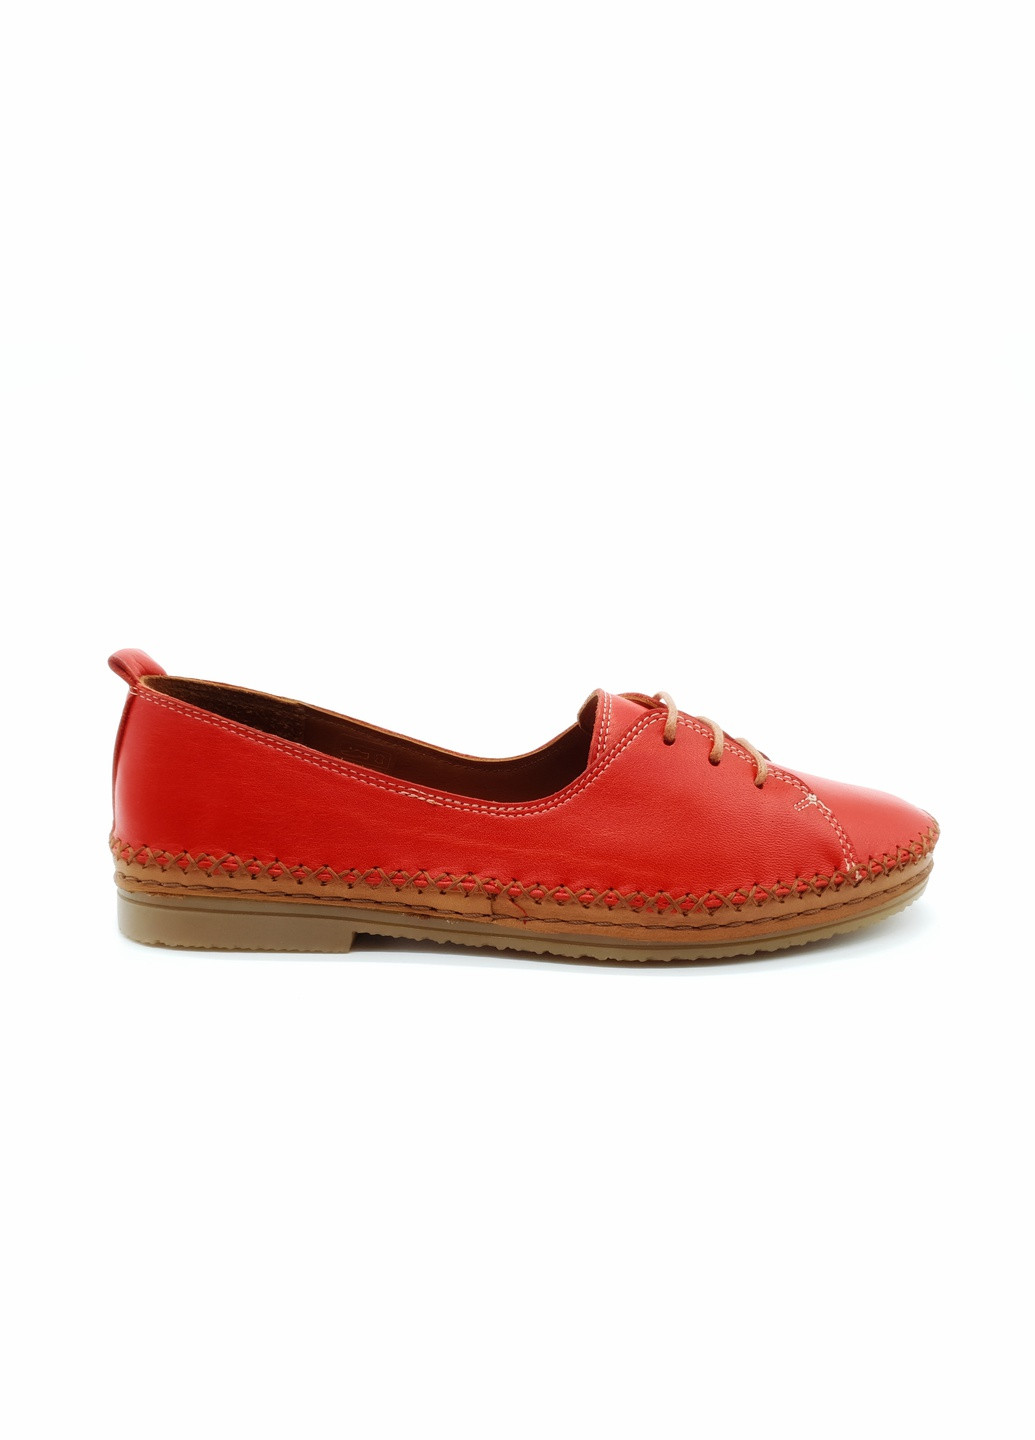 Женские туфли красные кожаные OS-17-2 23 см(р) Osso